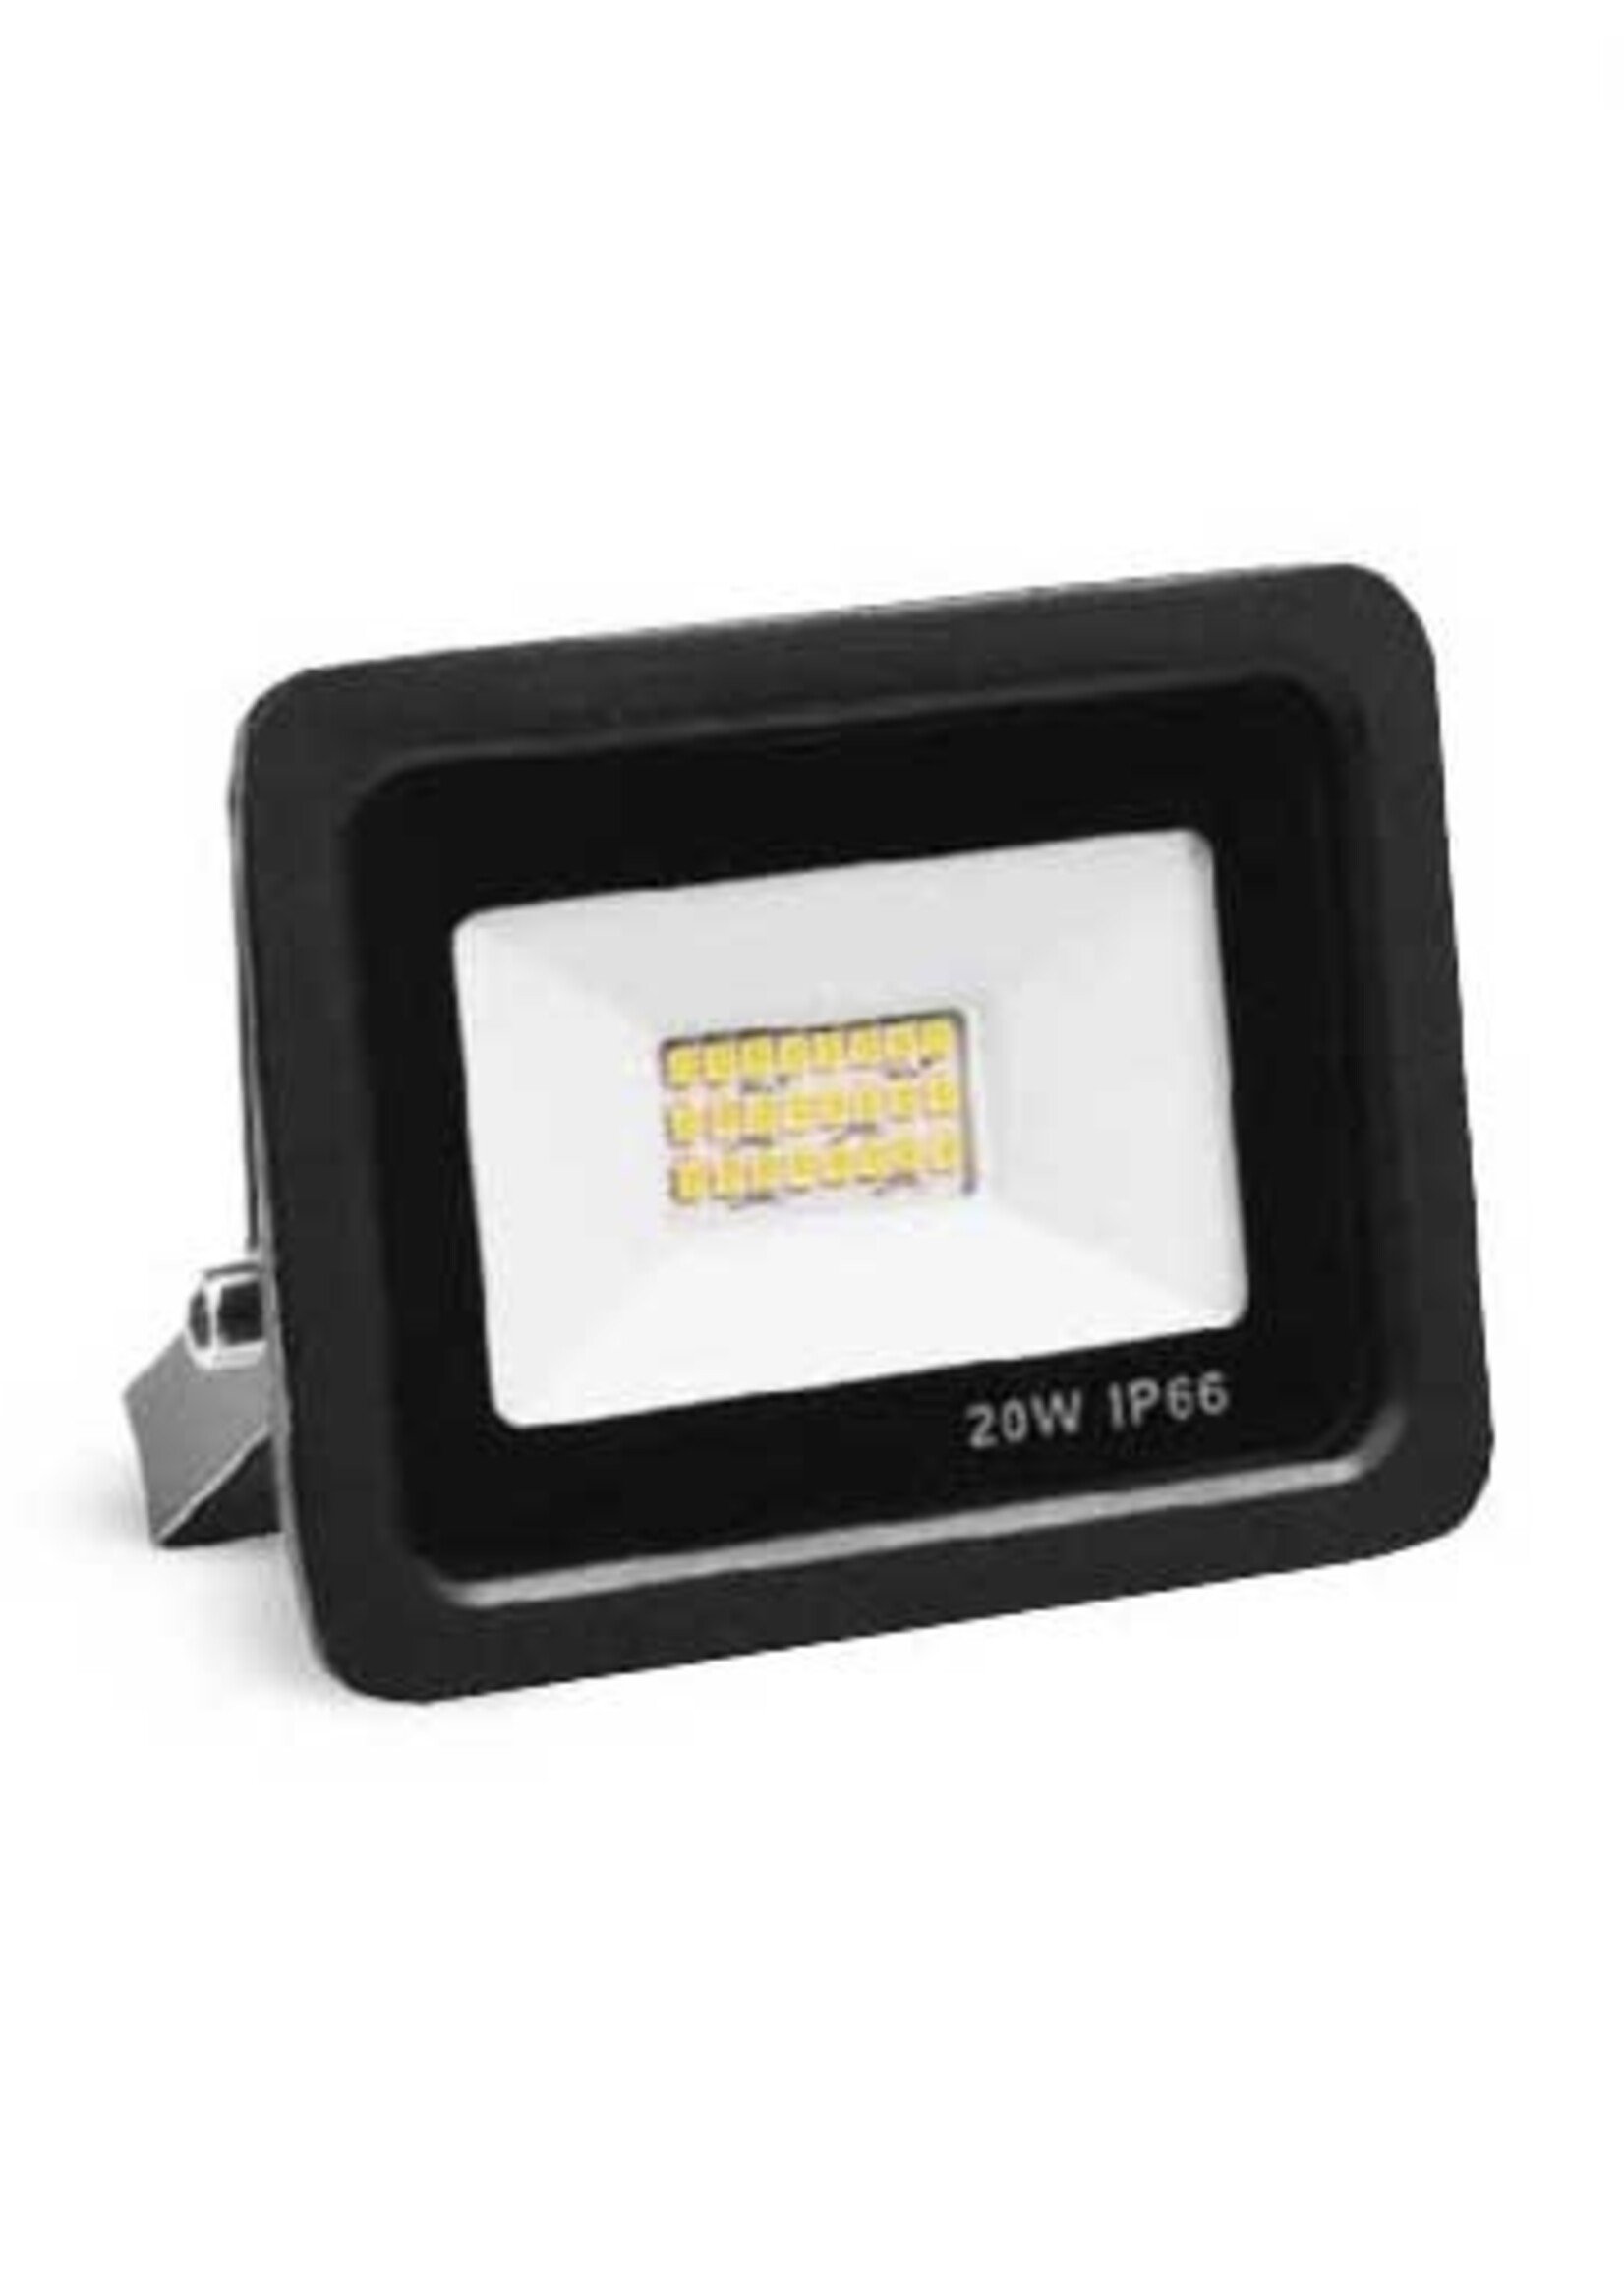 LEDWINKEL-Online LED Floodlight 20W IP66 Waterproof